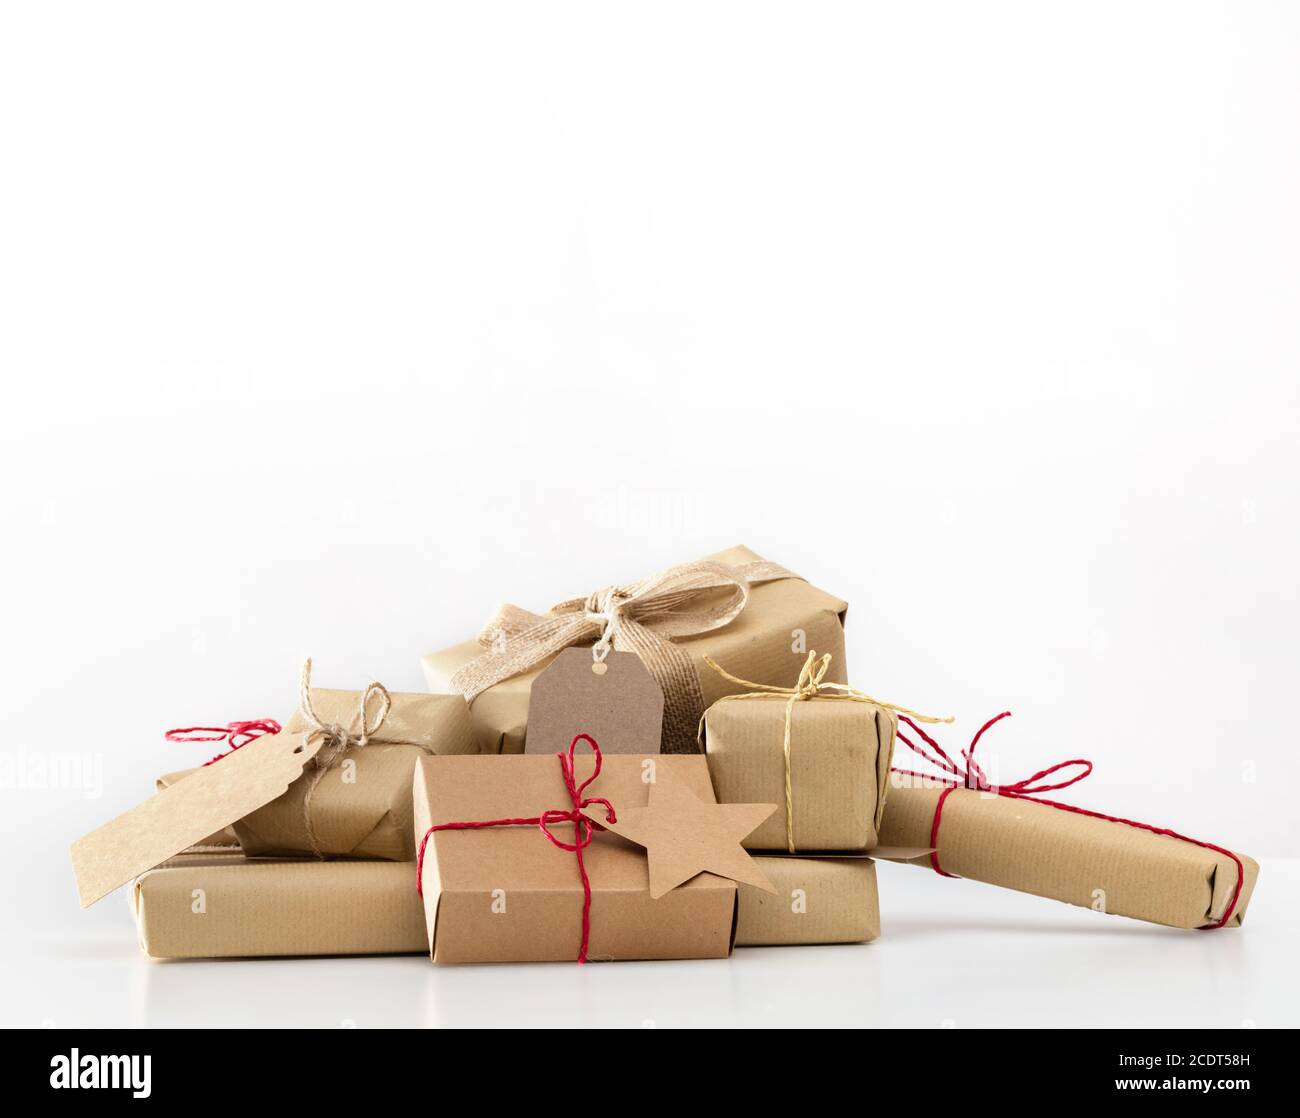 Rustikale Retro-Geschenke, Geschenkboxen. Weihnachtszeit, Öko-Papier Verpackung. Stockfoto